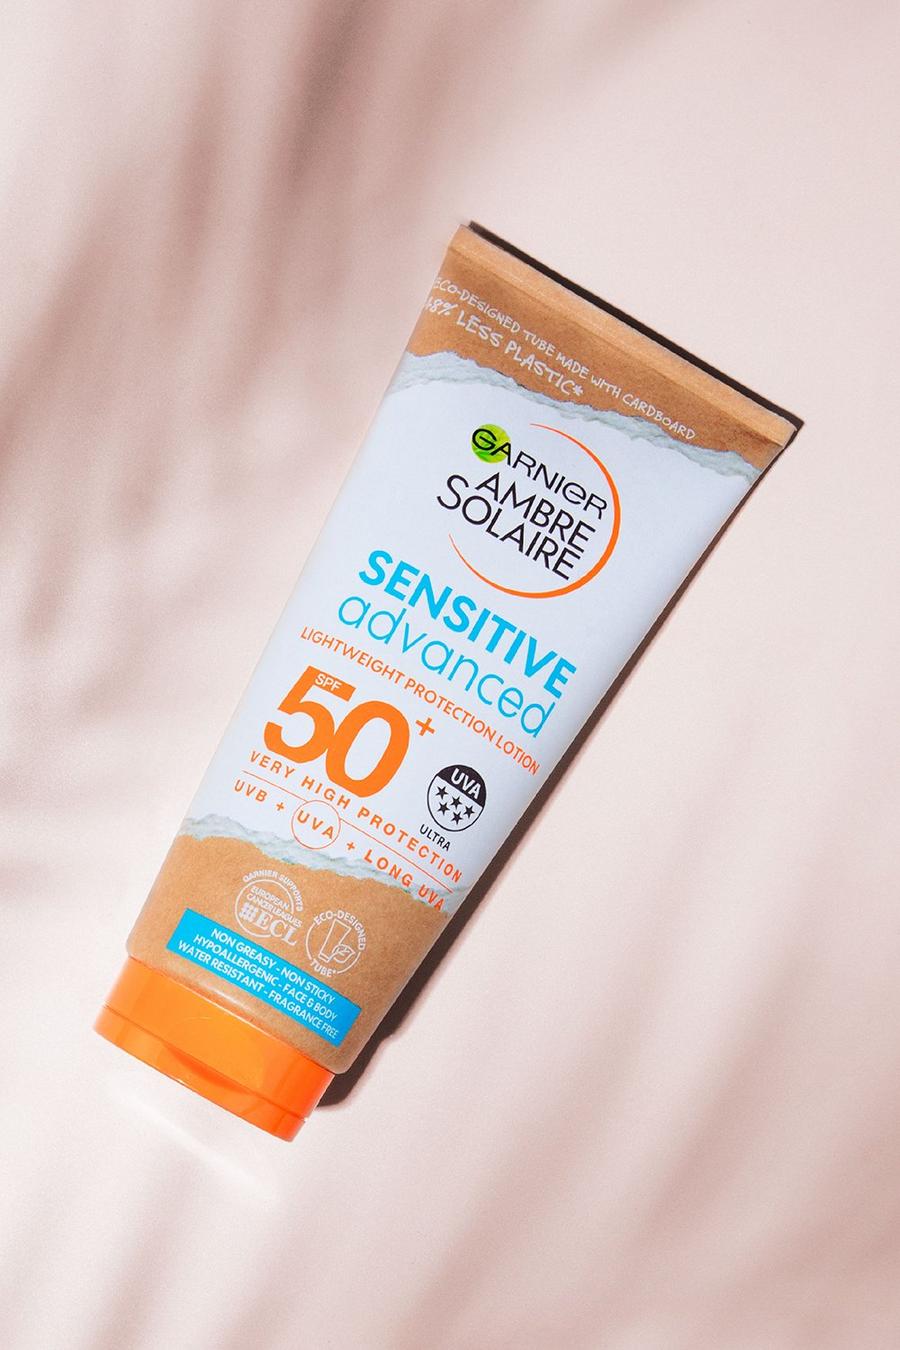 Crema de protección solar hipoalergénica para pieles sensibles SPF50+ 200ml de Garnier Ambre Solaire, White bianco